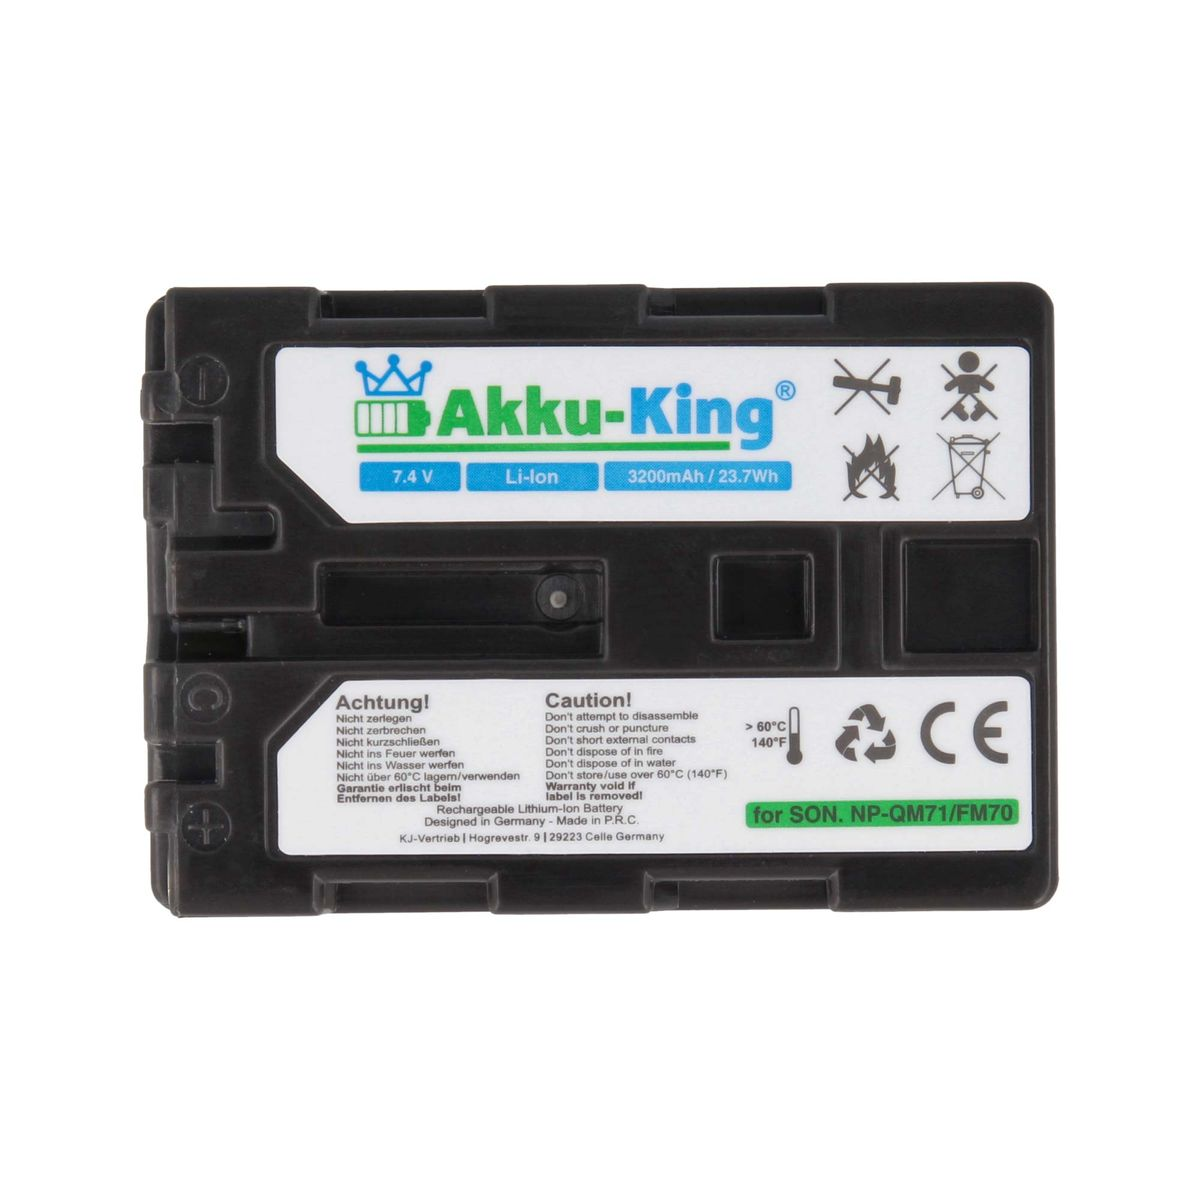 AKKU-KING Akku kompatibel mit Li-Ion 7.4 NP-QM51 Sony Kamera-Akku, 3200mAh Volt